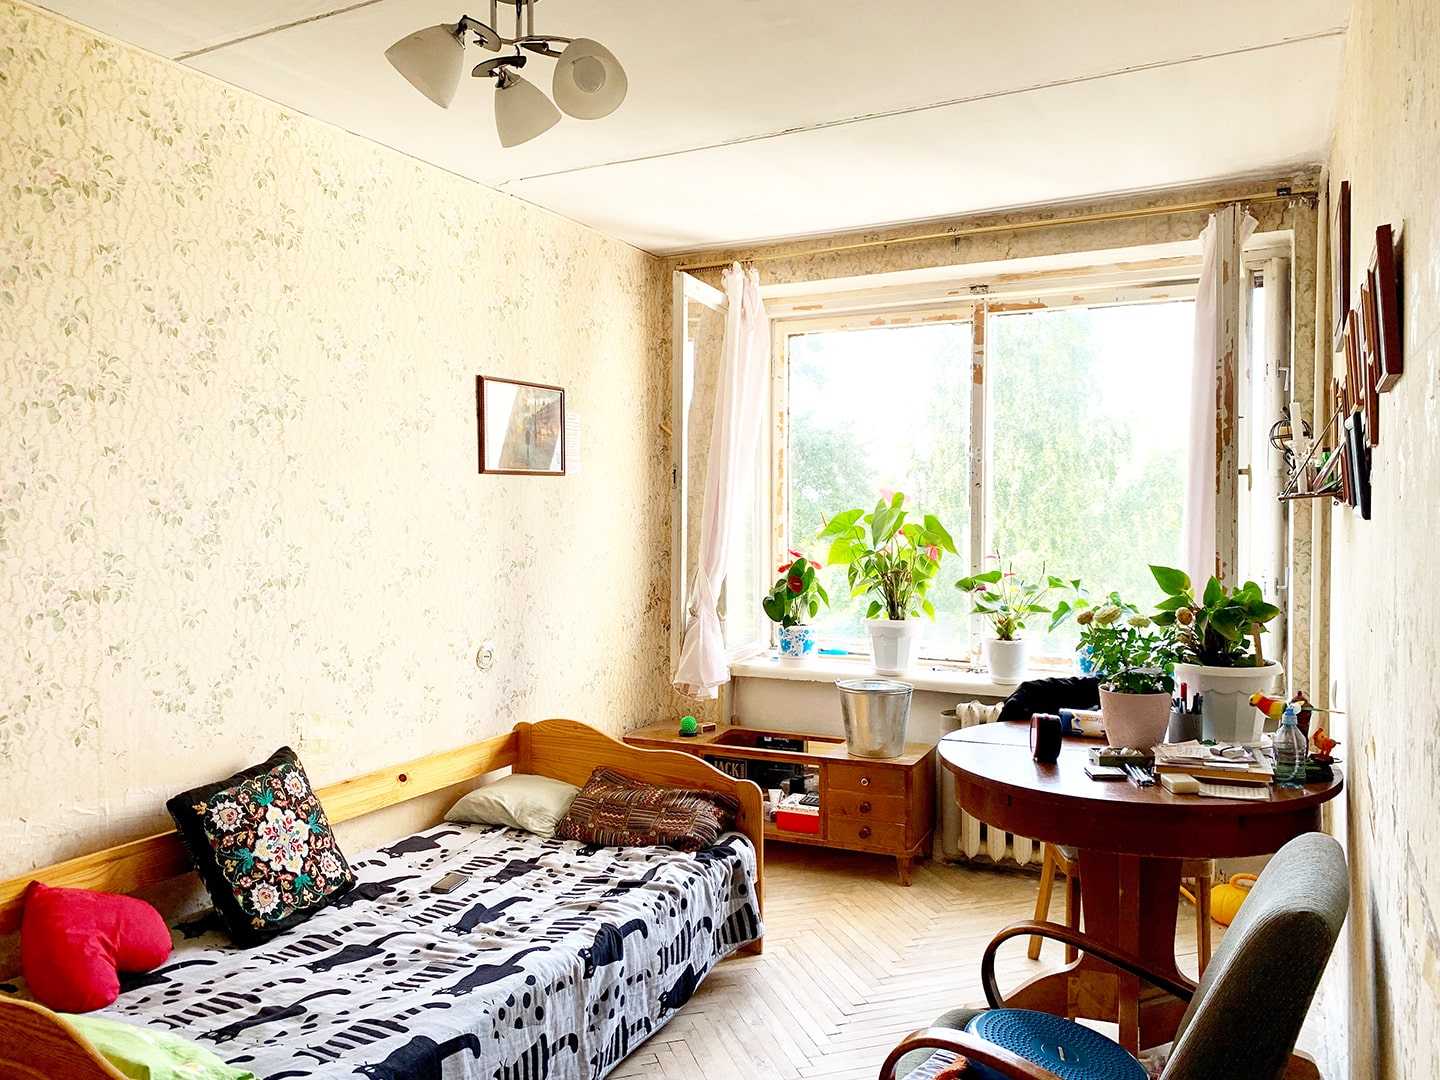 Двухкомнатная квартира 43 кв.м на улице Мосина в Сестрорецке в городе Санкт-Петербург, фото 2, телефон продавца: +7 (812) 929-96-12